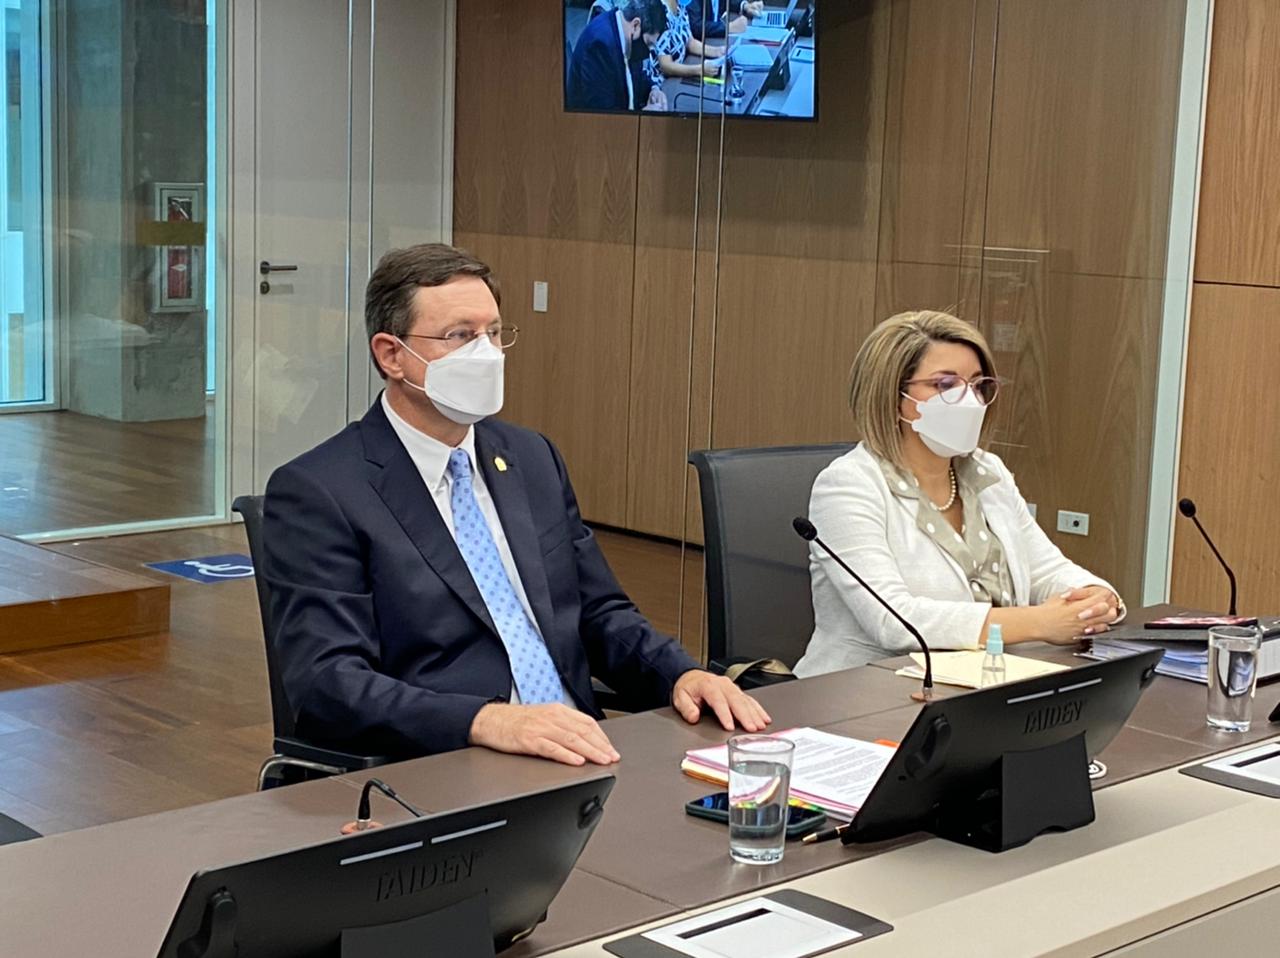 Román Macaya se abstiene de declarar sobre supuestas irregularidades en compra de mascarillas durante pandemia